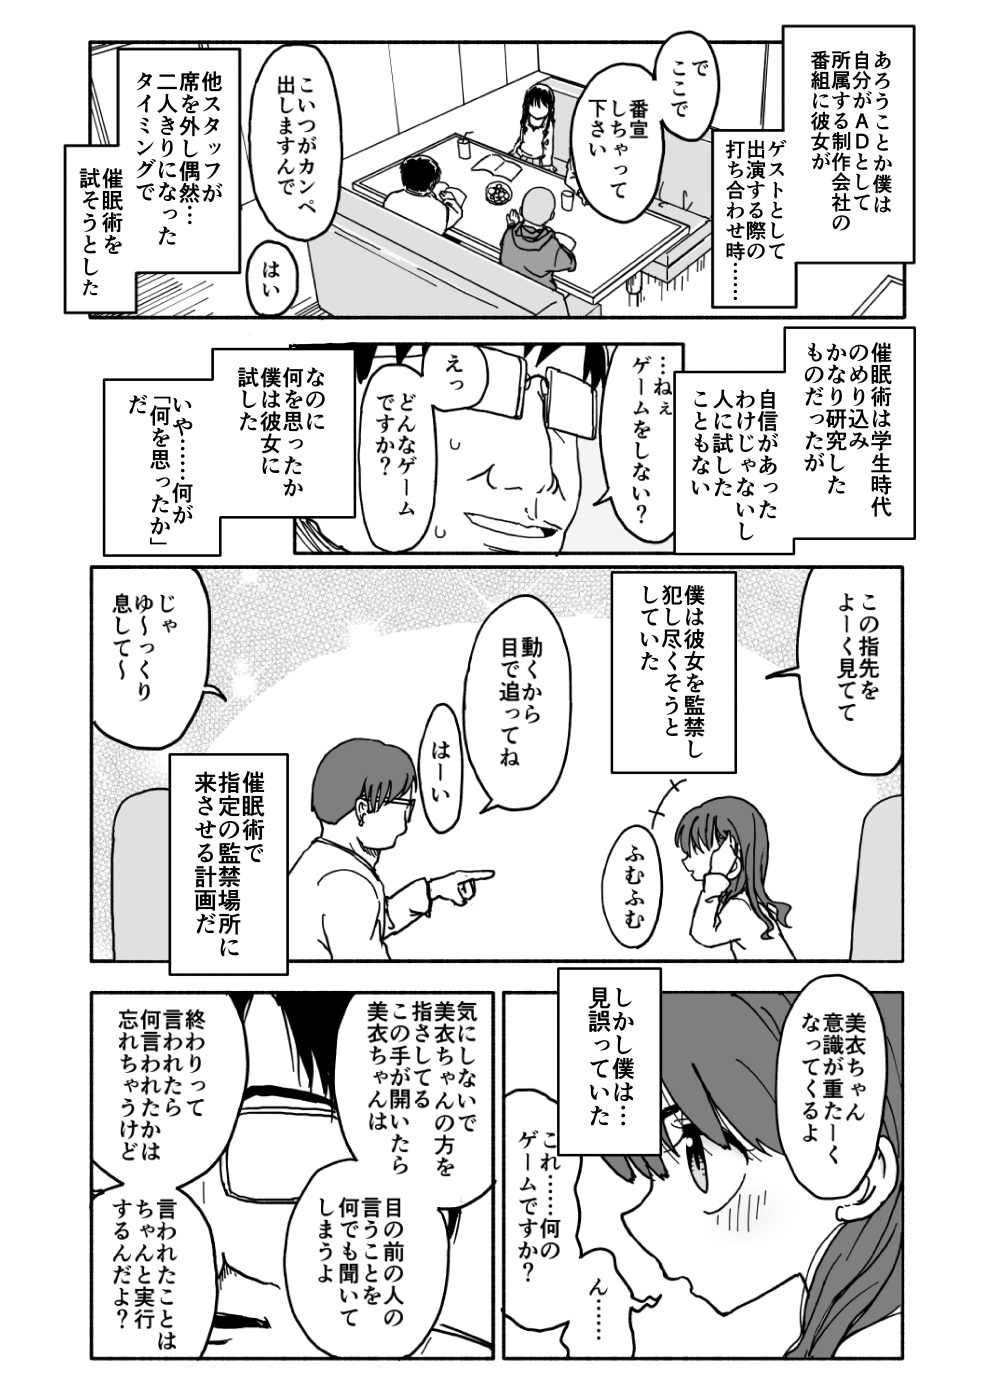 [Futotta Obasan] Okashi Tsukuri Idol ☆ Gimi ! Ecchi na Himitsu no Tokkun manga page 8 full